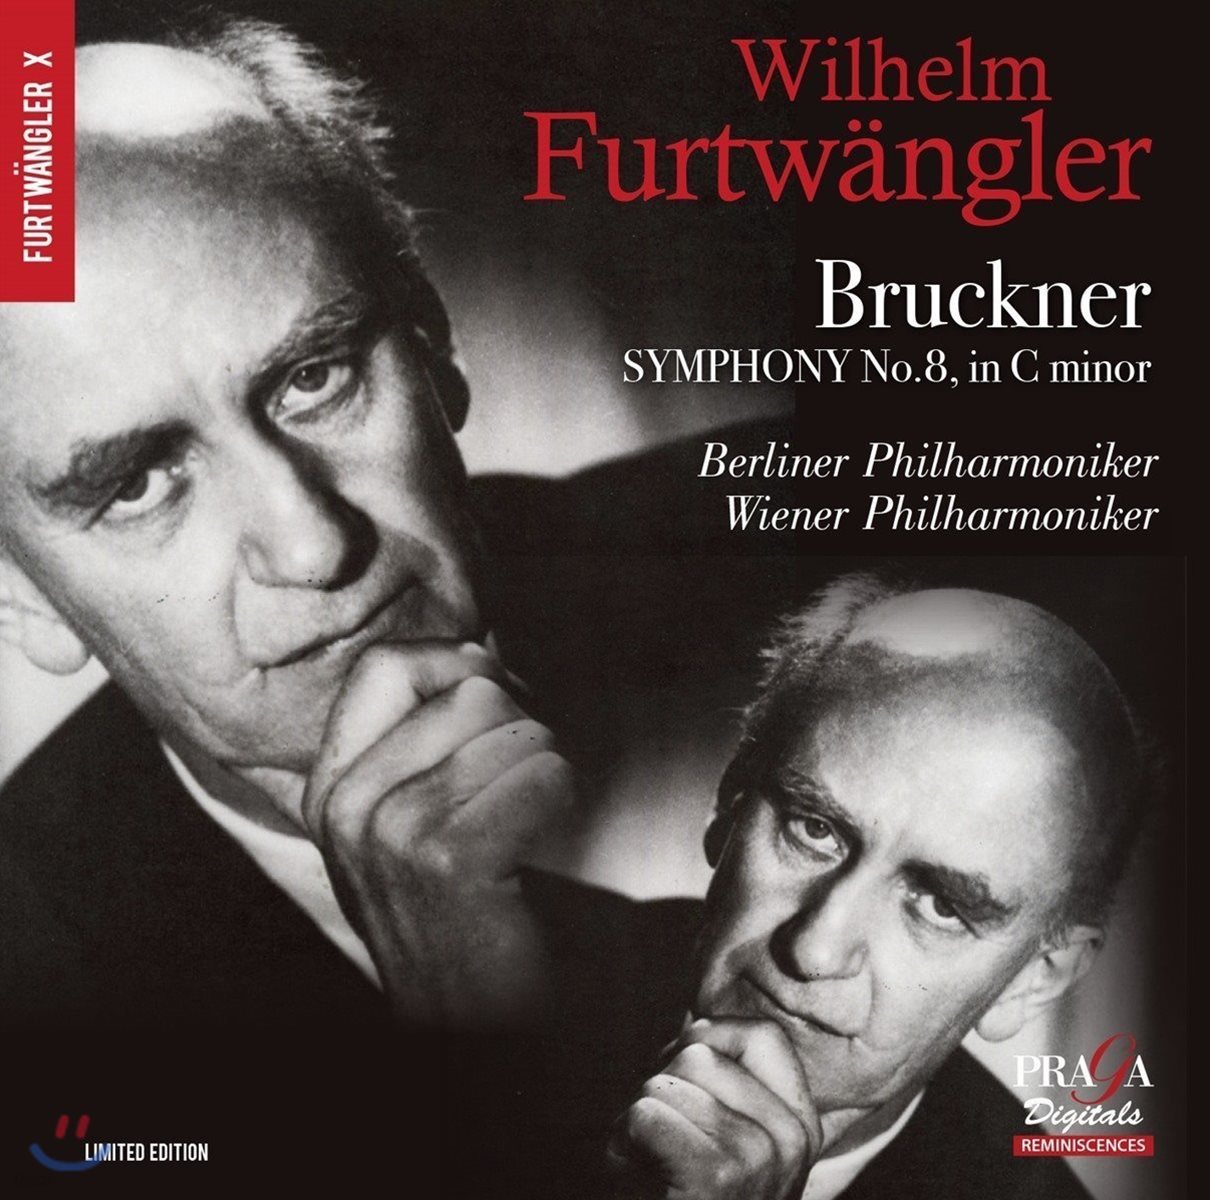 Wilhelm Furtwangler 브루크너: 교향곡 8번 c단조 [1939년 하스 버전] (Bruckner: Symphony No.8 A117)